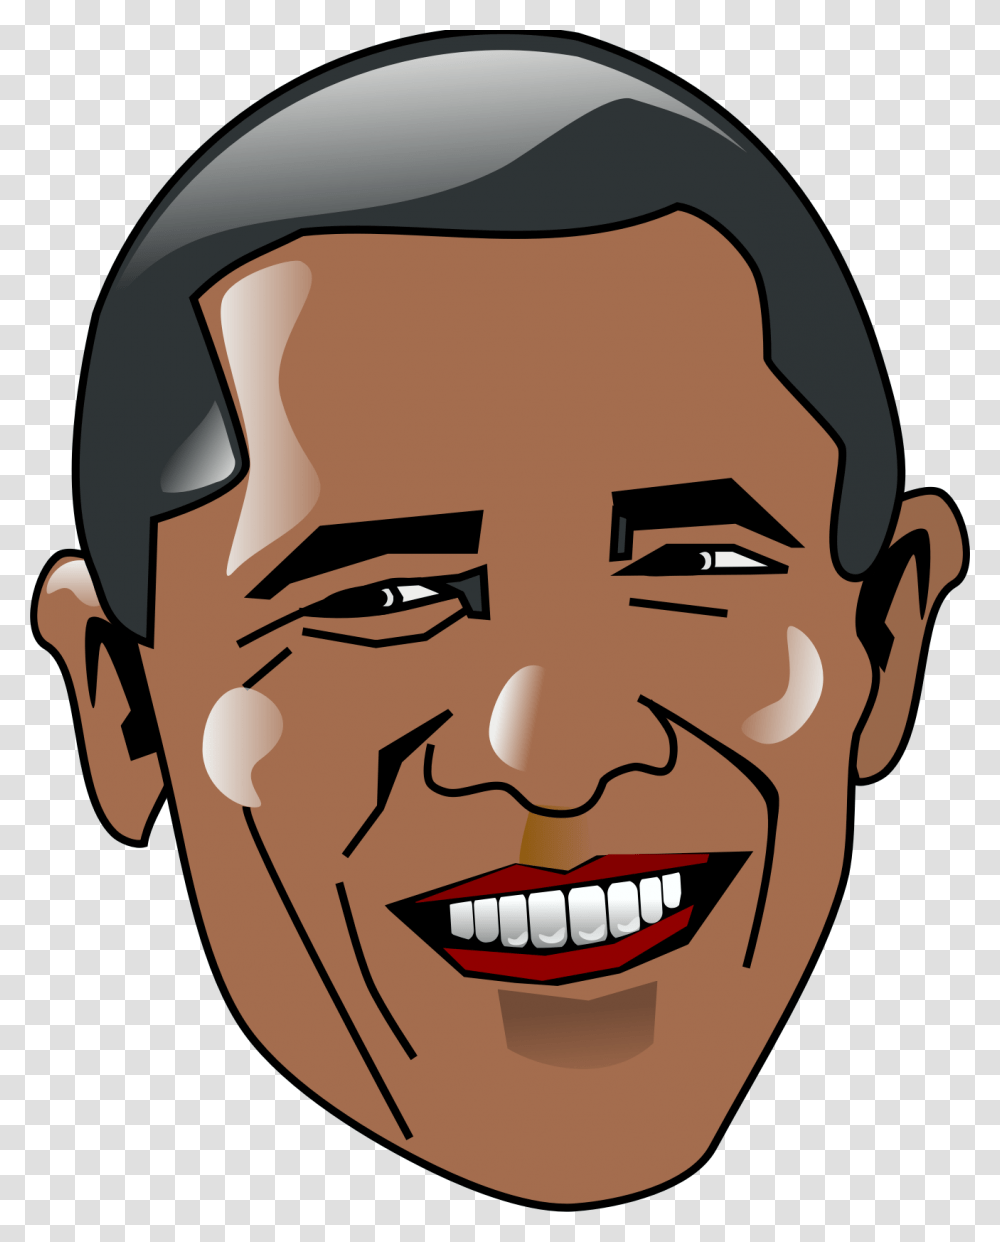 Obama Clip Arts Barack Obama Clip Art, Face, Head, Smile, Teeth Transparent Png